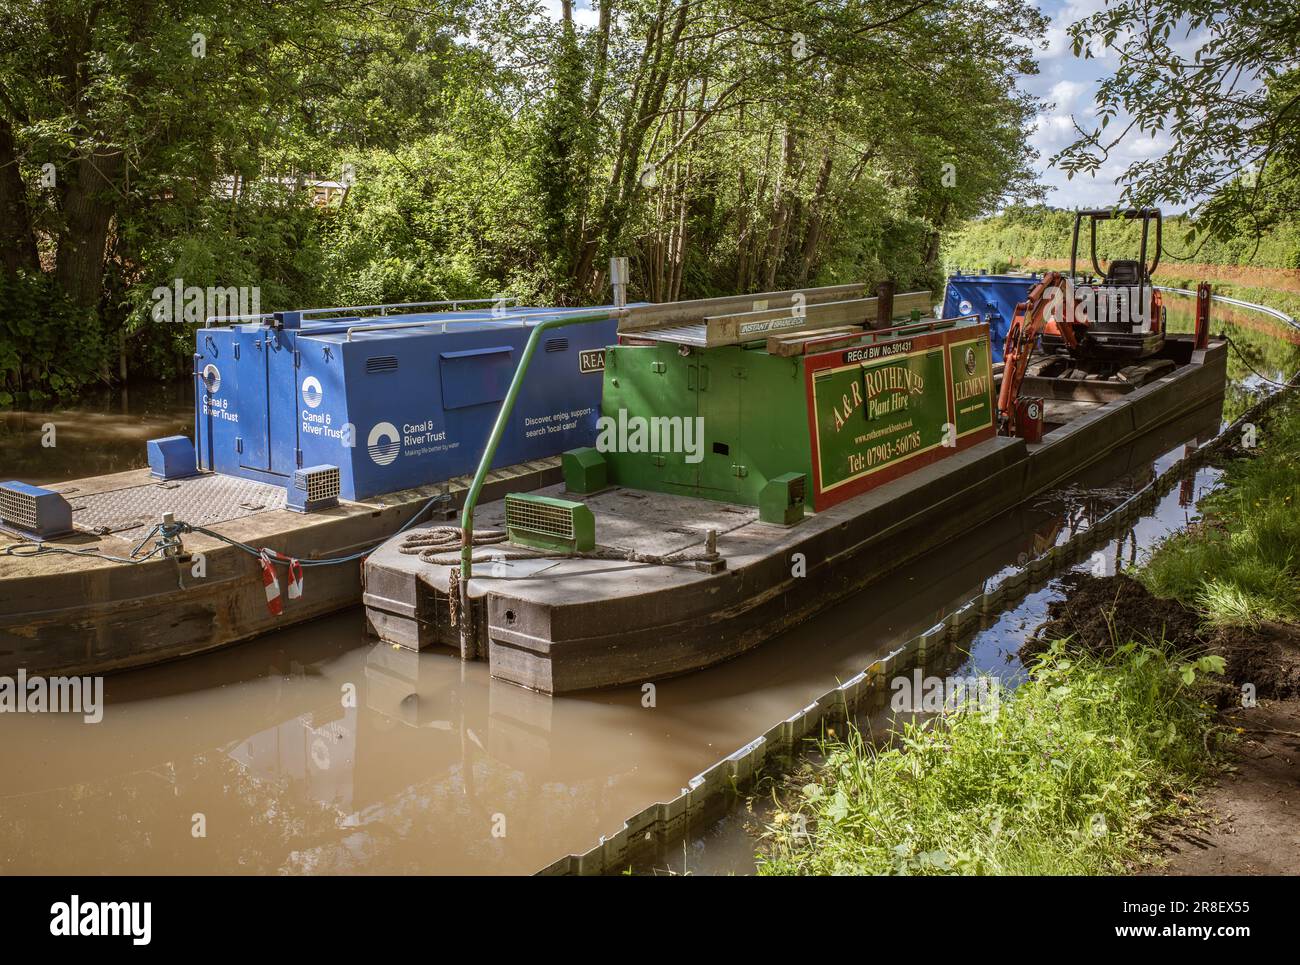 Arbeitsboote auf einem Kanal in Worcestershire, von denen eines mit einem Bagger ausgestattet ist, bereiten sich darauf vor, wichtige Arbeiten entlang der Wasserstraße durchzuführen. Canal & River Trust. Stockfoto